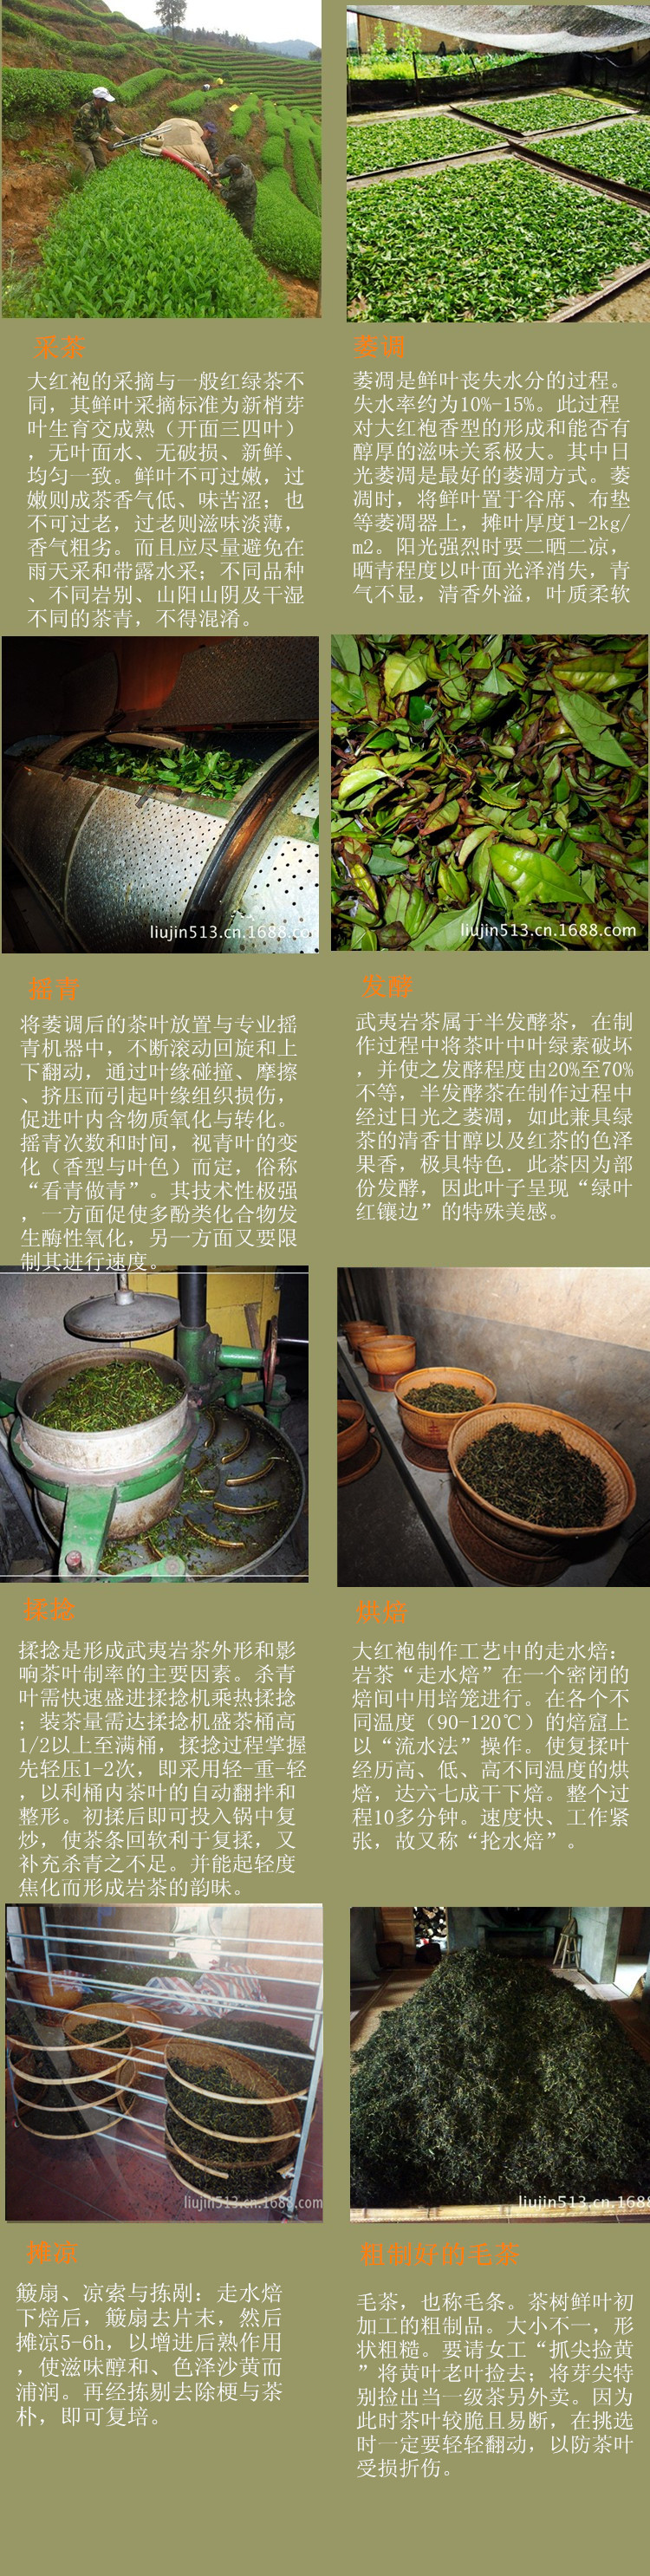 岩茶制作工艺流程图片图片